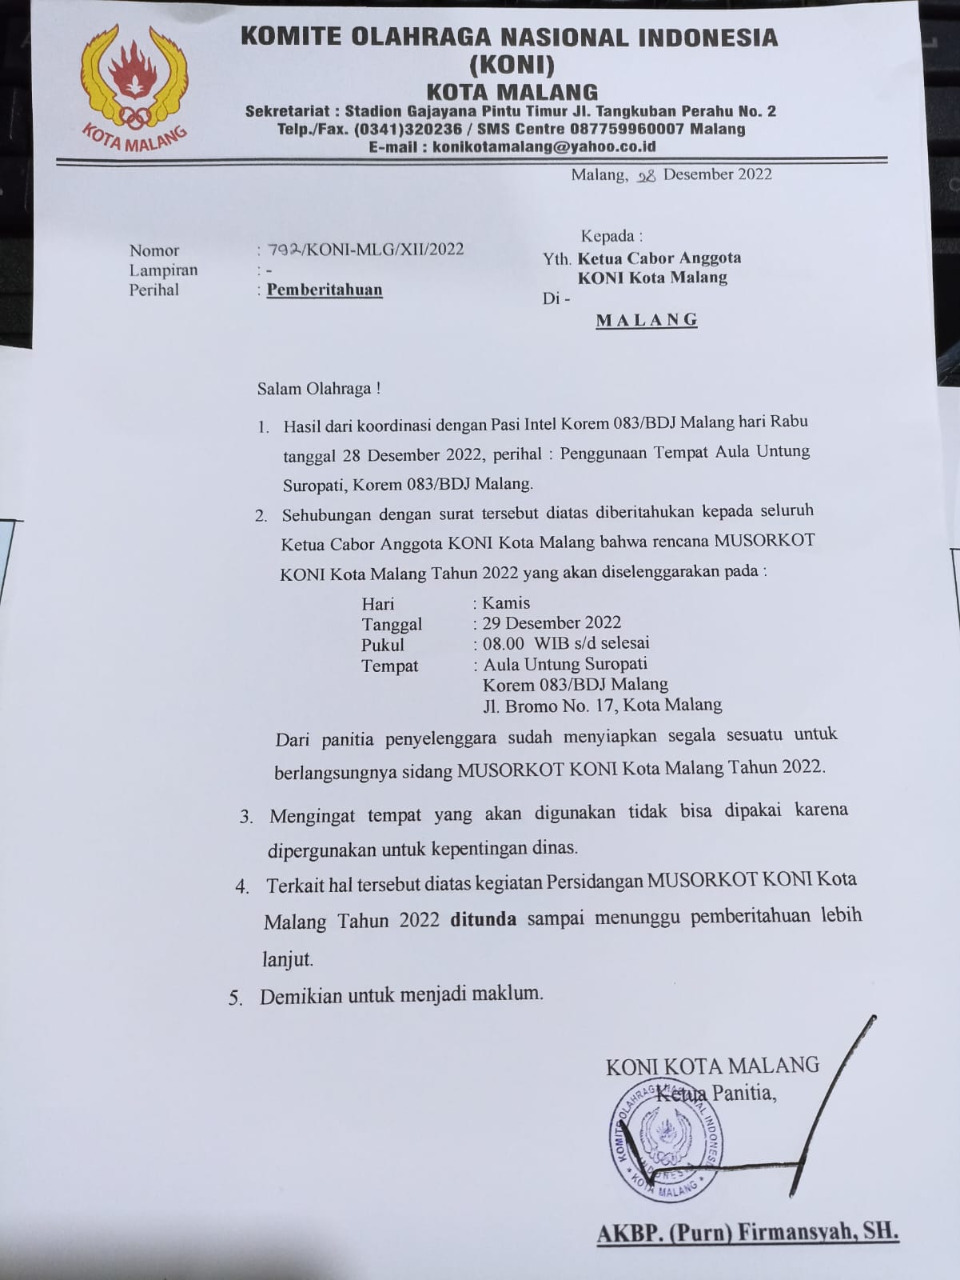 Pemberitahuan dari panitia pelaksana Musorkot KONI Kota Malang tentang penundaan pelaksanaan Musorkot. (istimewa)